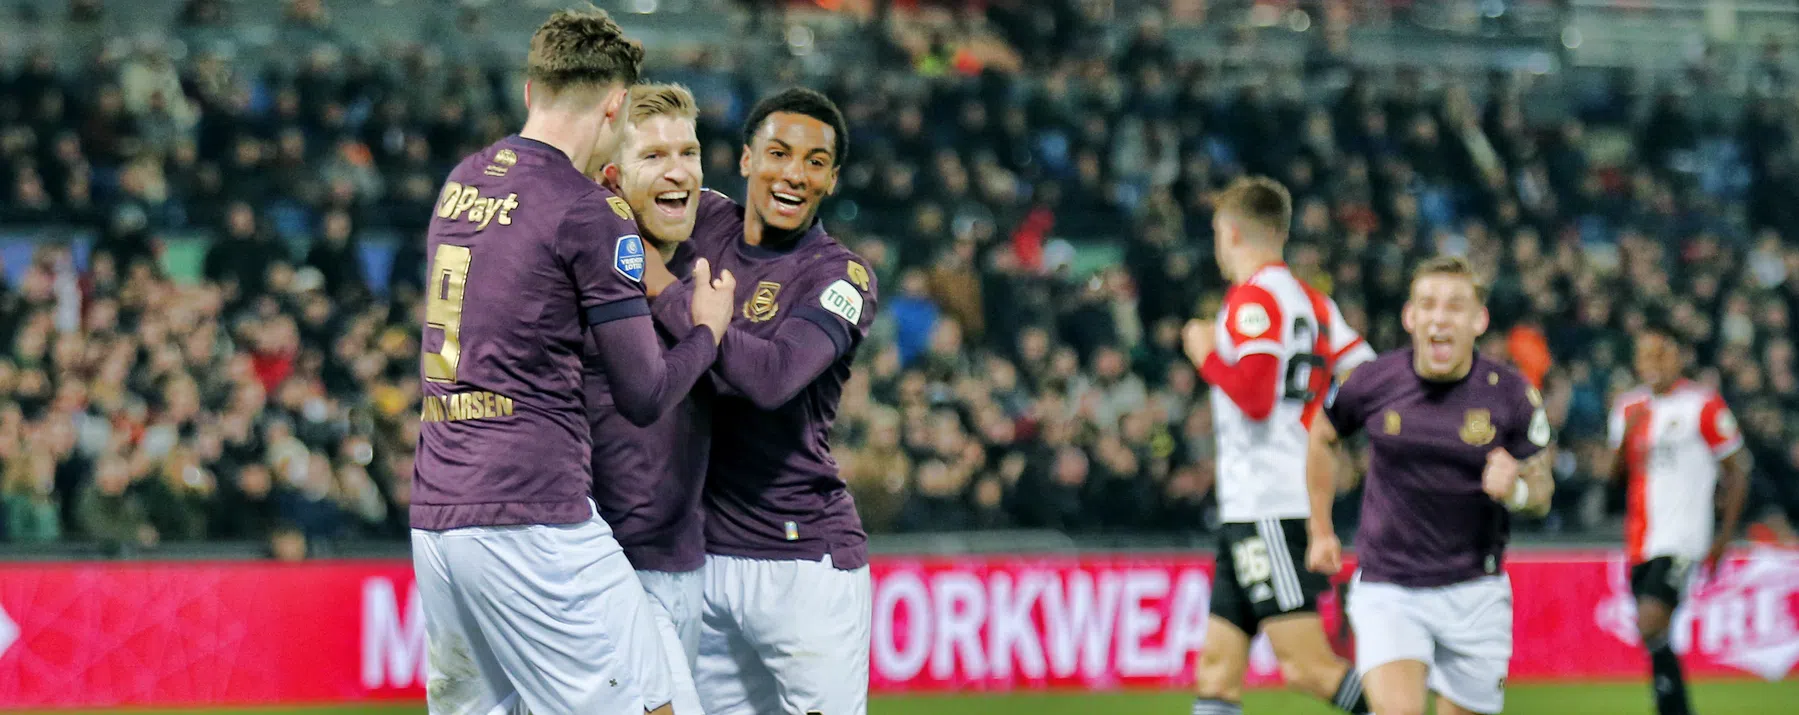 Won FC Groningen ooit van Feyenoord in De Kuip?